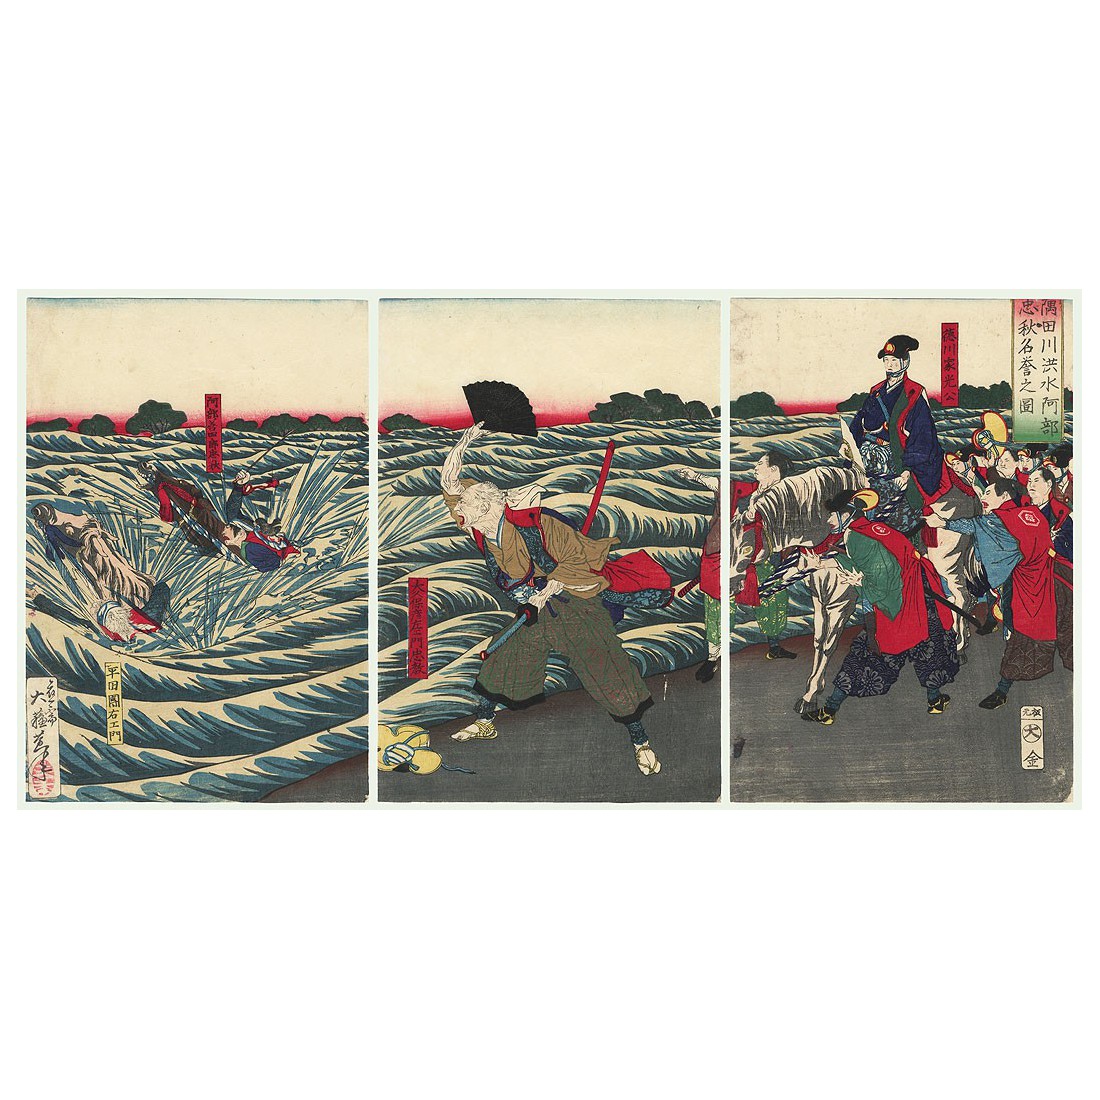 Abe Tadaaki affronte les inondations de la rivière Sumida